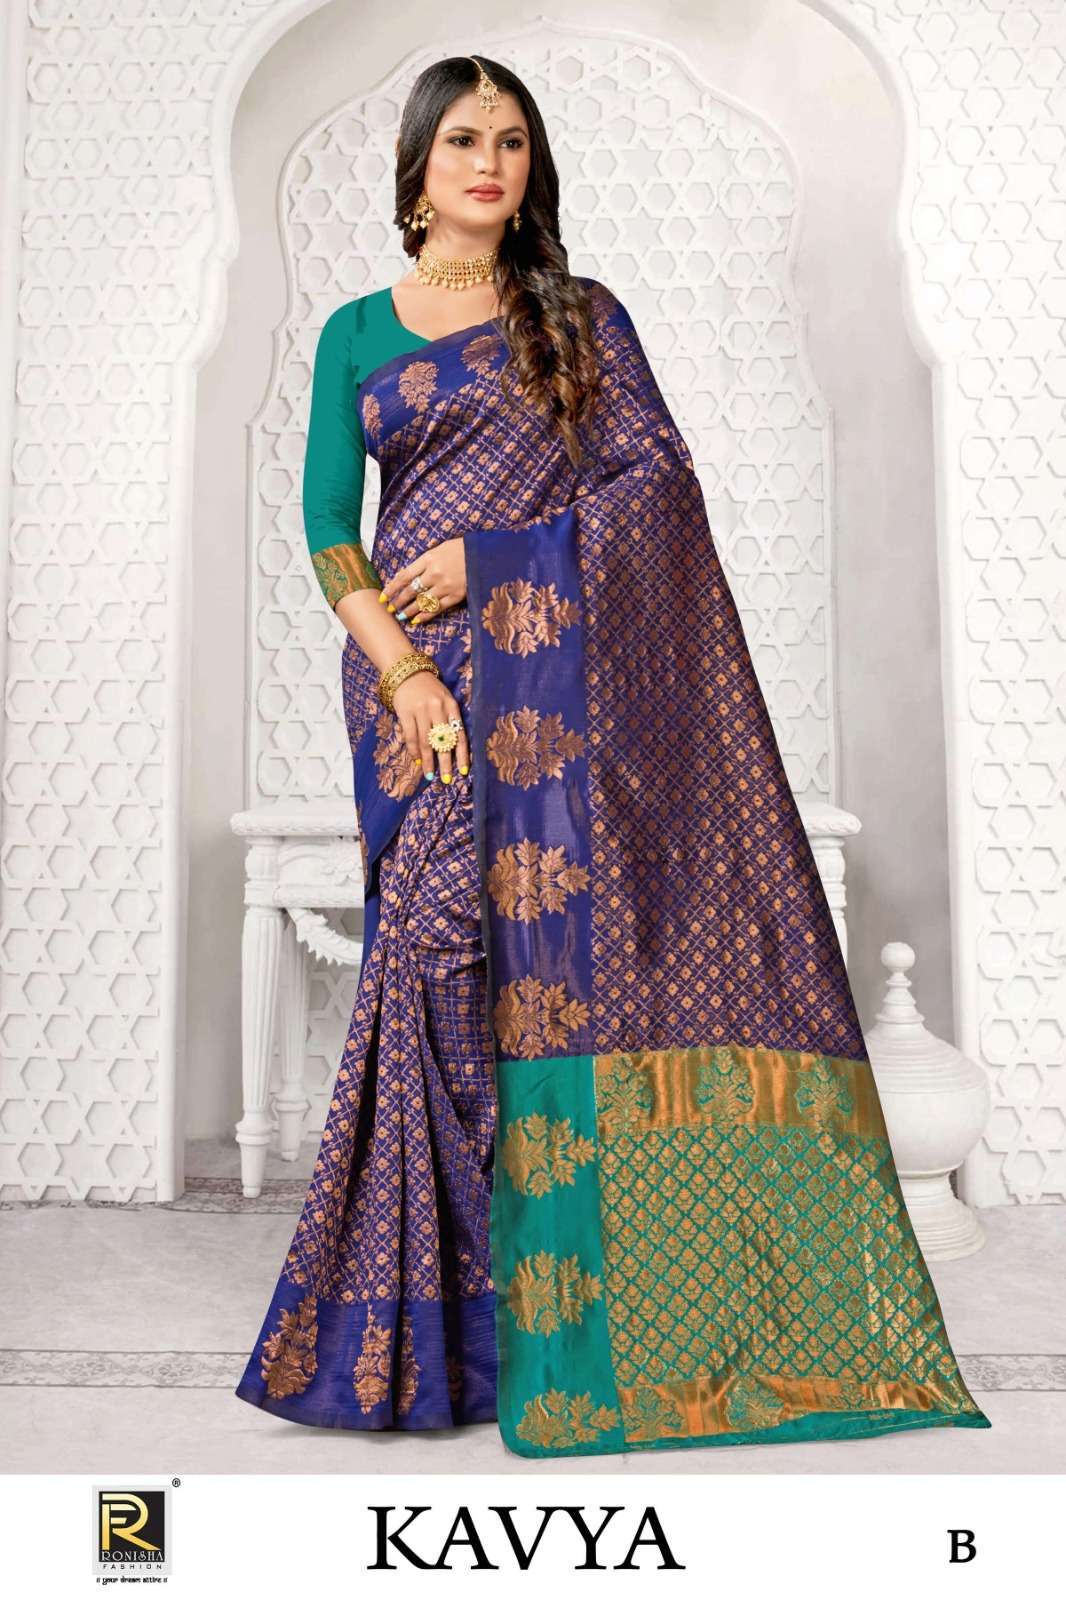 Ronisha Kavya Banarasi Silk Saree Wholesale price in india